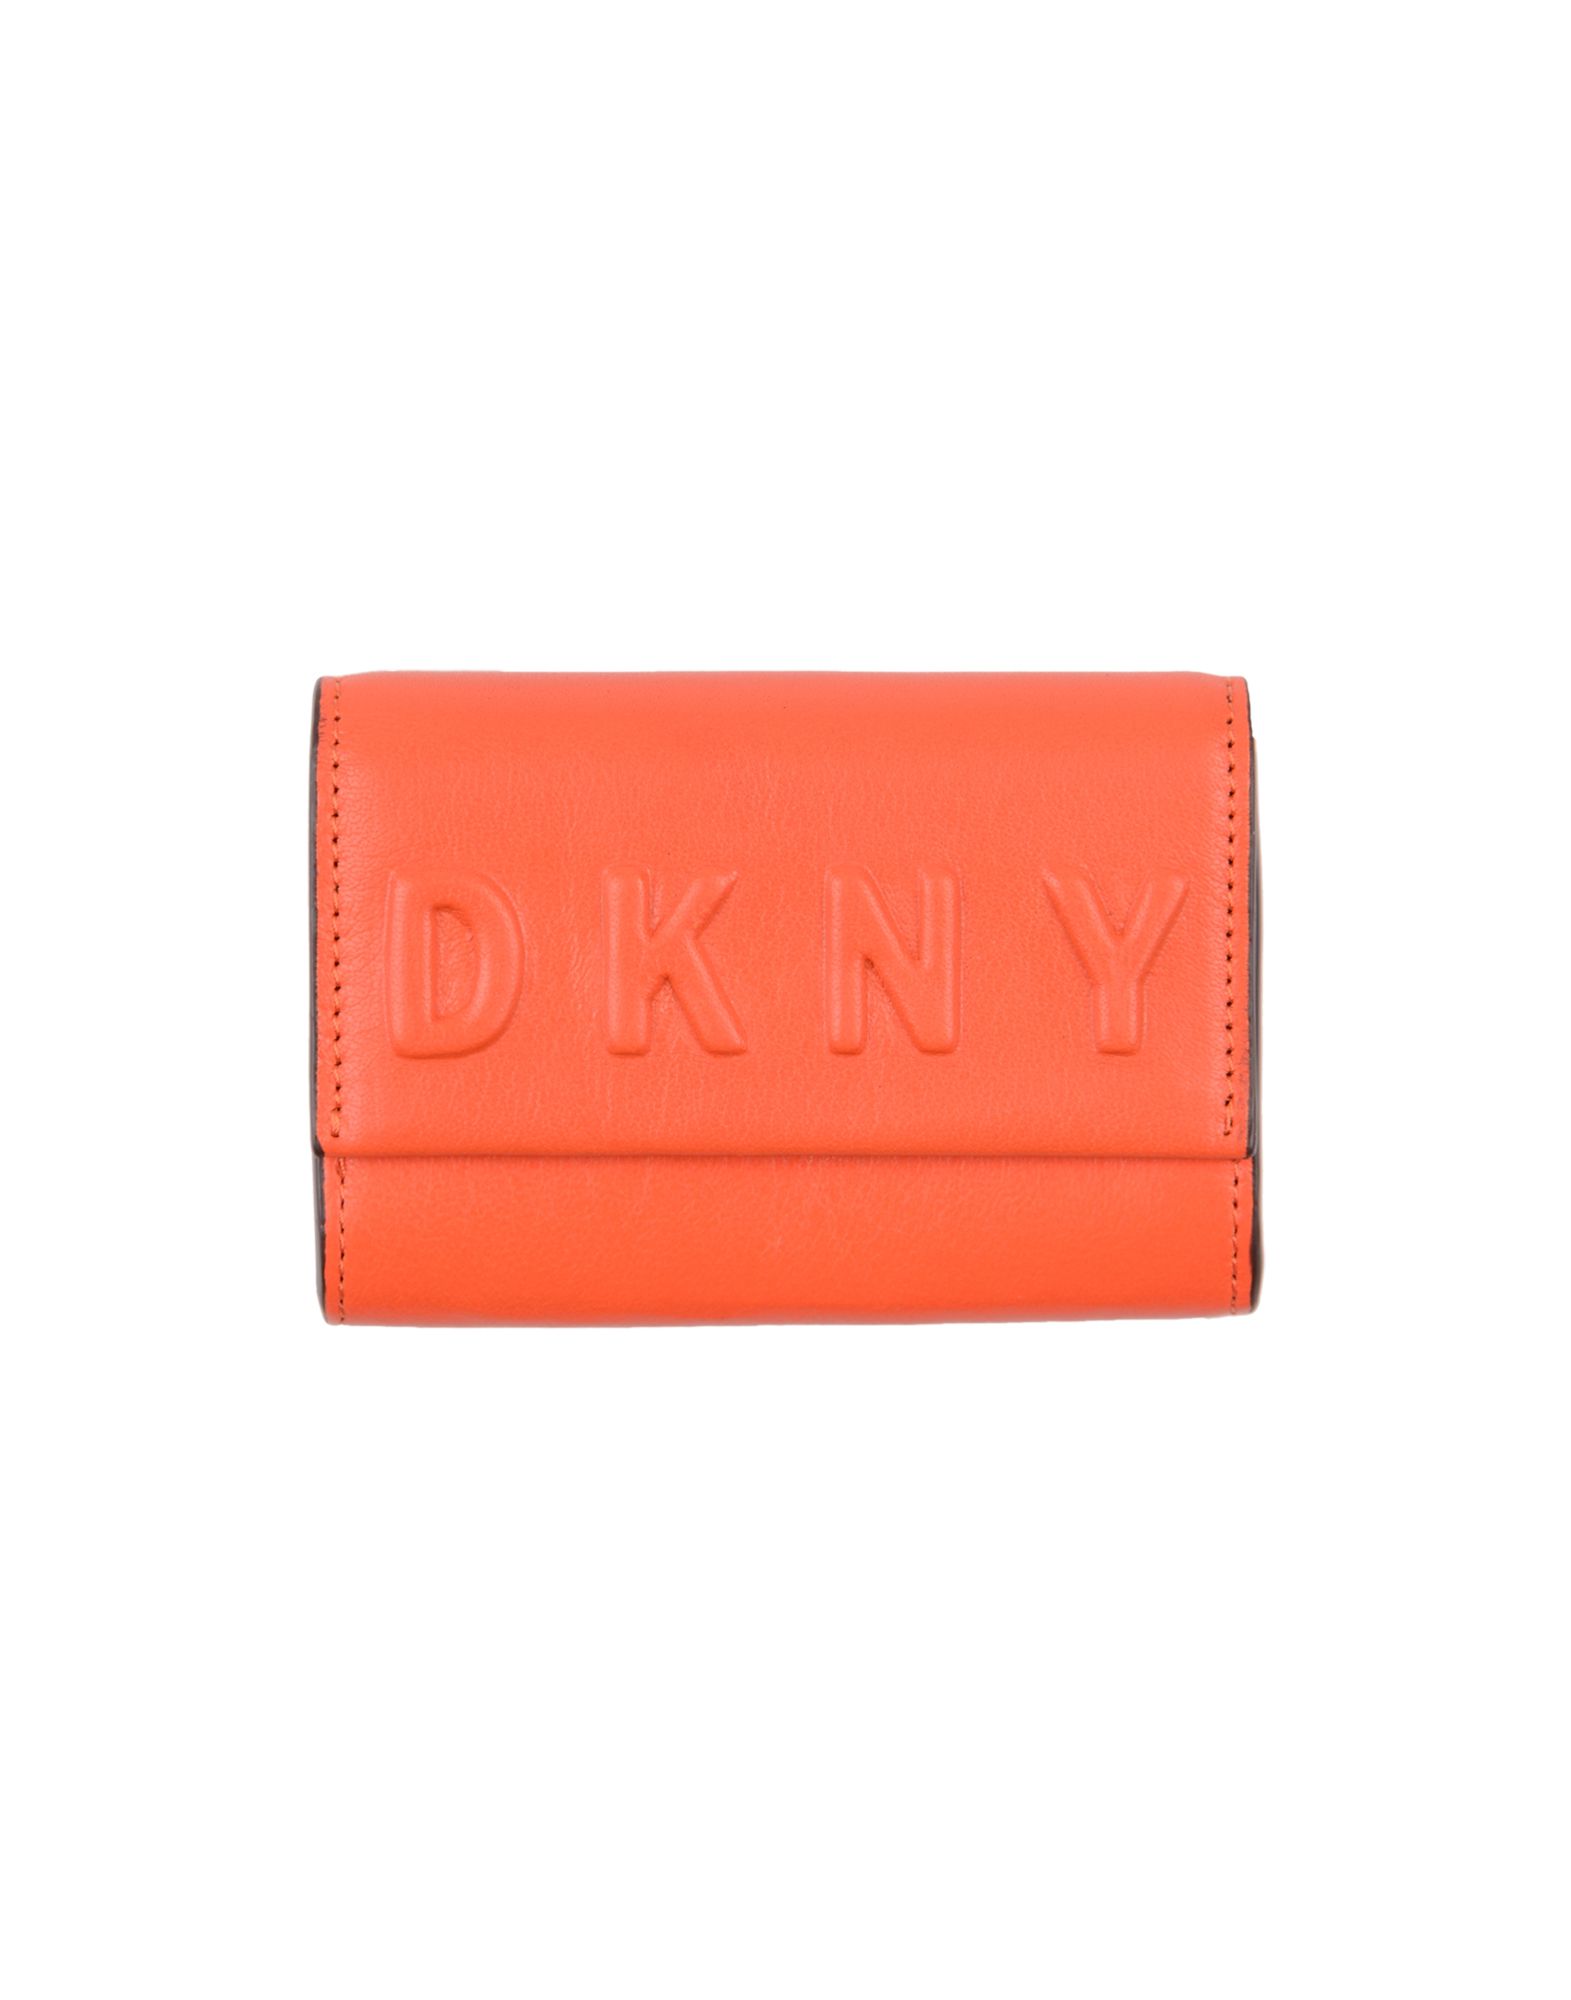 《送料無料》DKNY レディース 財布 オレンジ 牛革